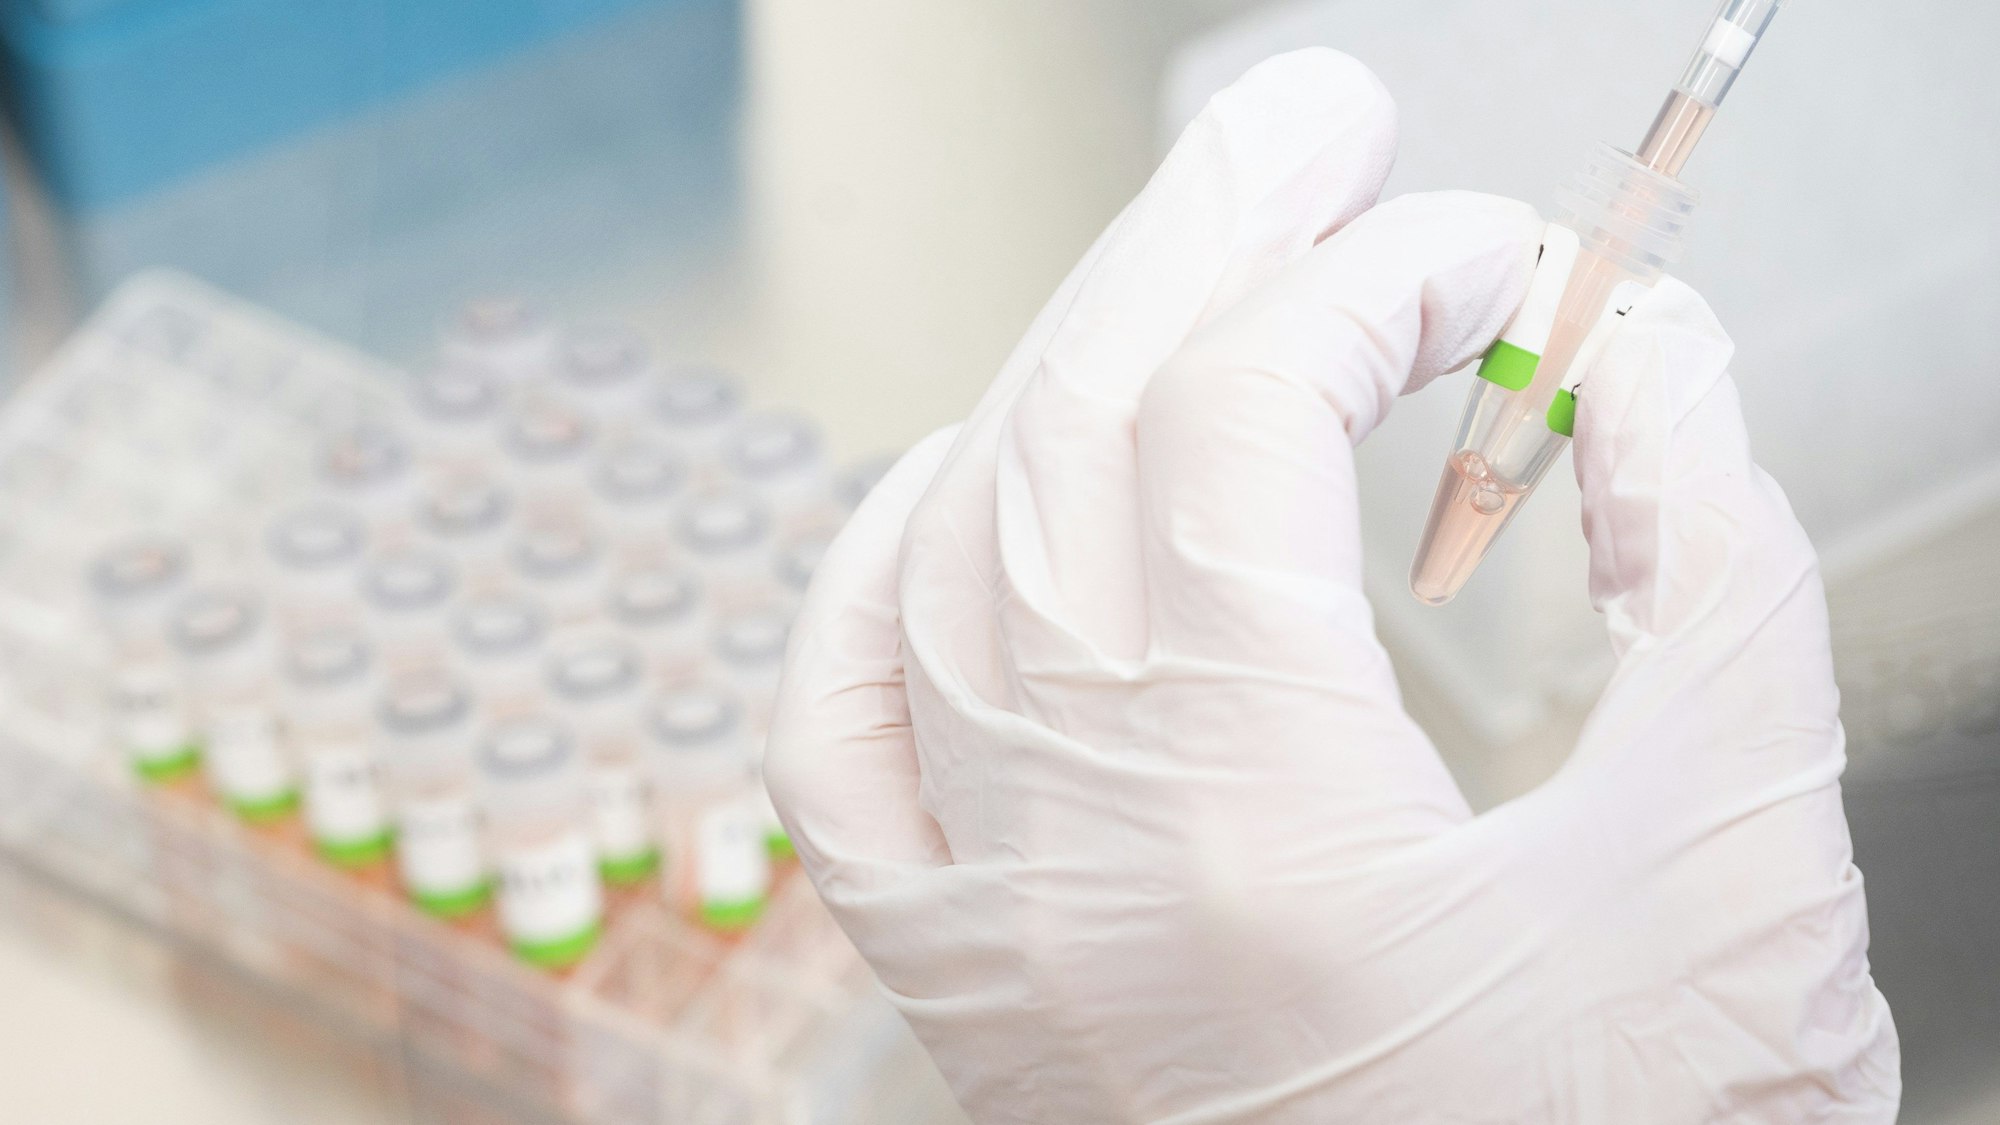 Eine Medizinerin bereitet PCR-Tests gegen das Coronavirus vor. Man sieht nur die Hände und Test-Proben.